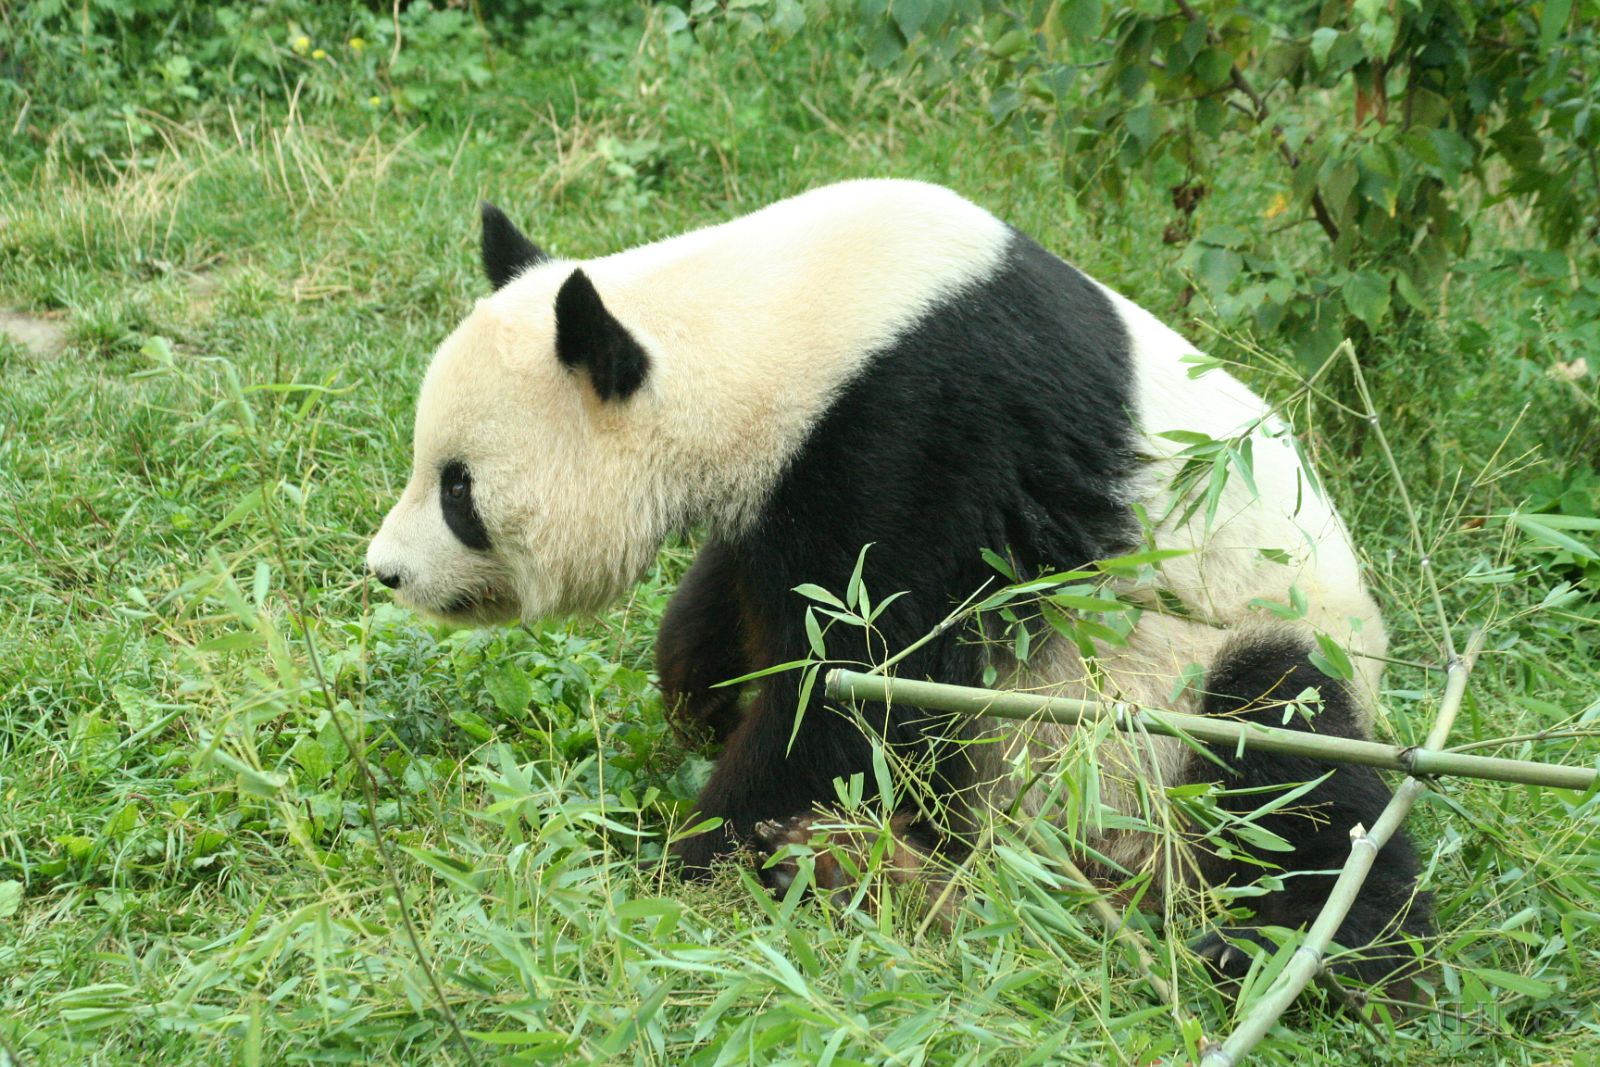 060917c699.JPG - Panda velká (Ailuropoda melanoleuca)